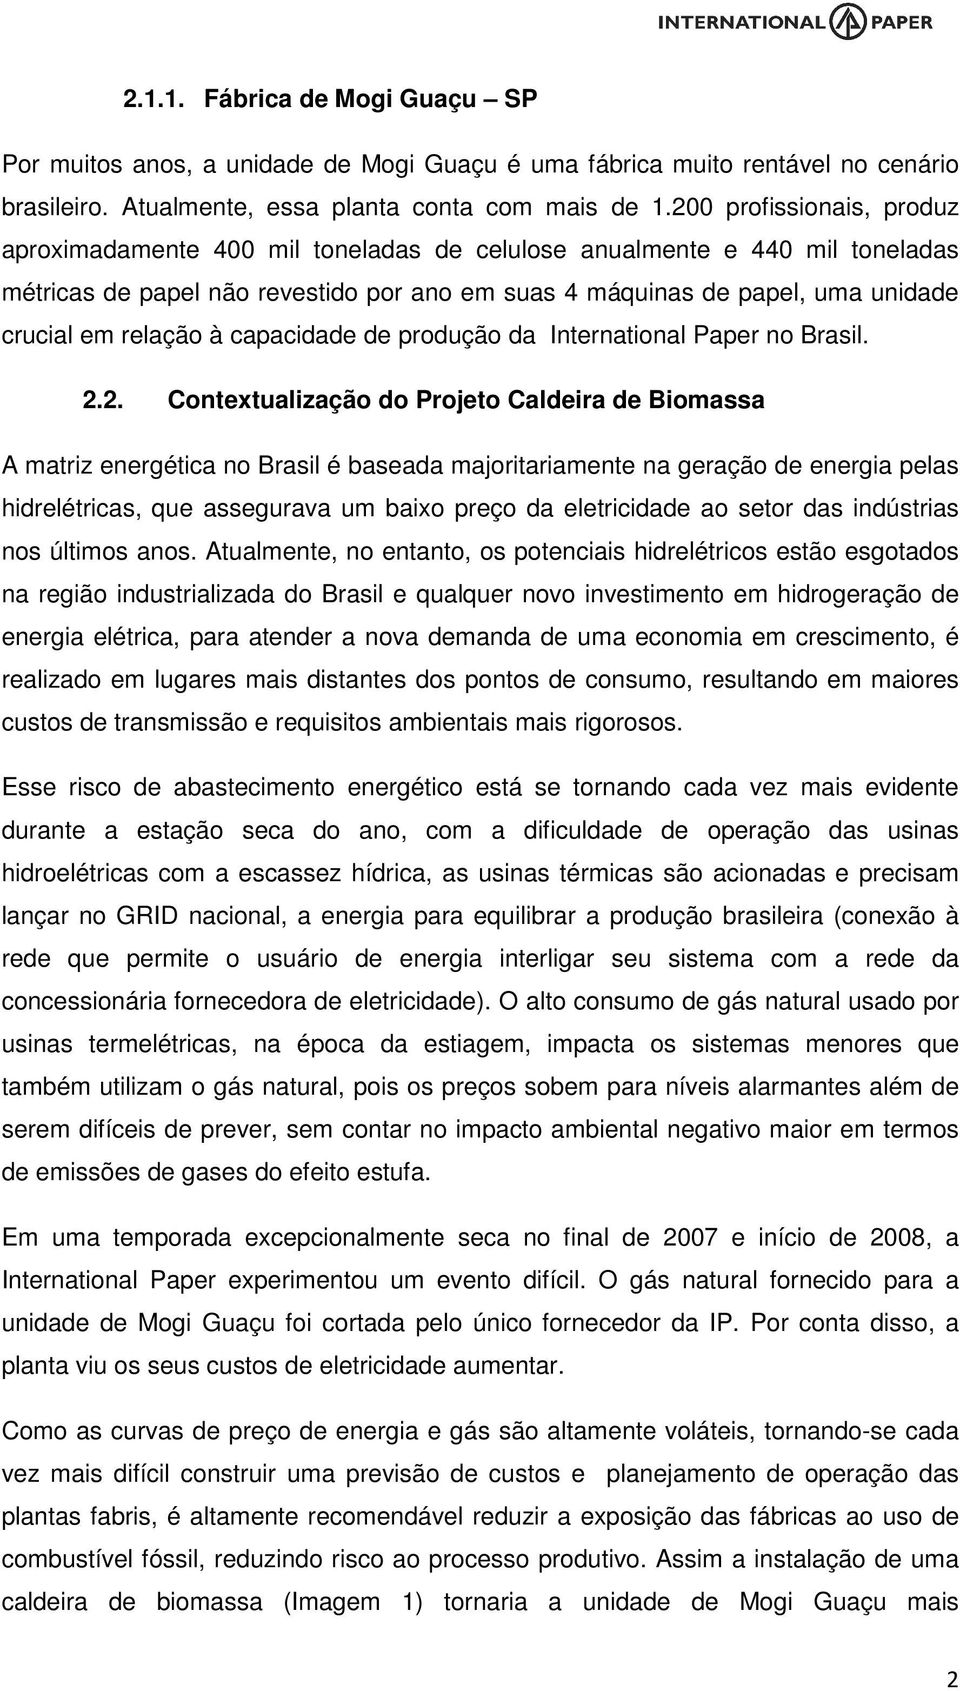 relação à capacidade de produção da International Paper no Brasil. 2.